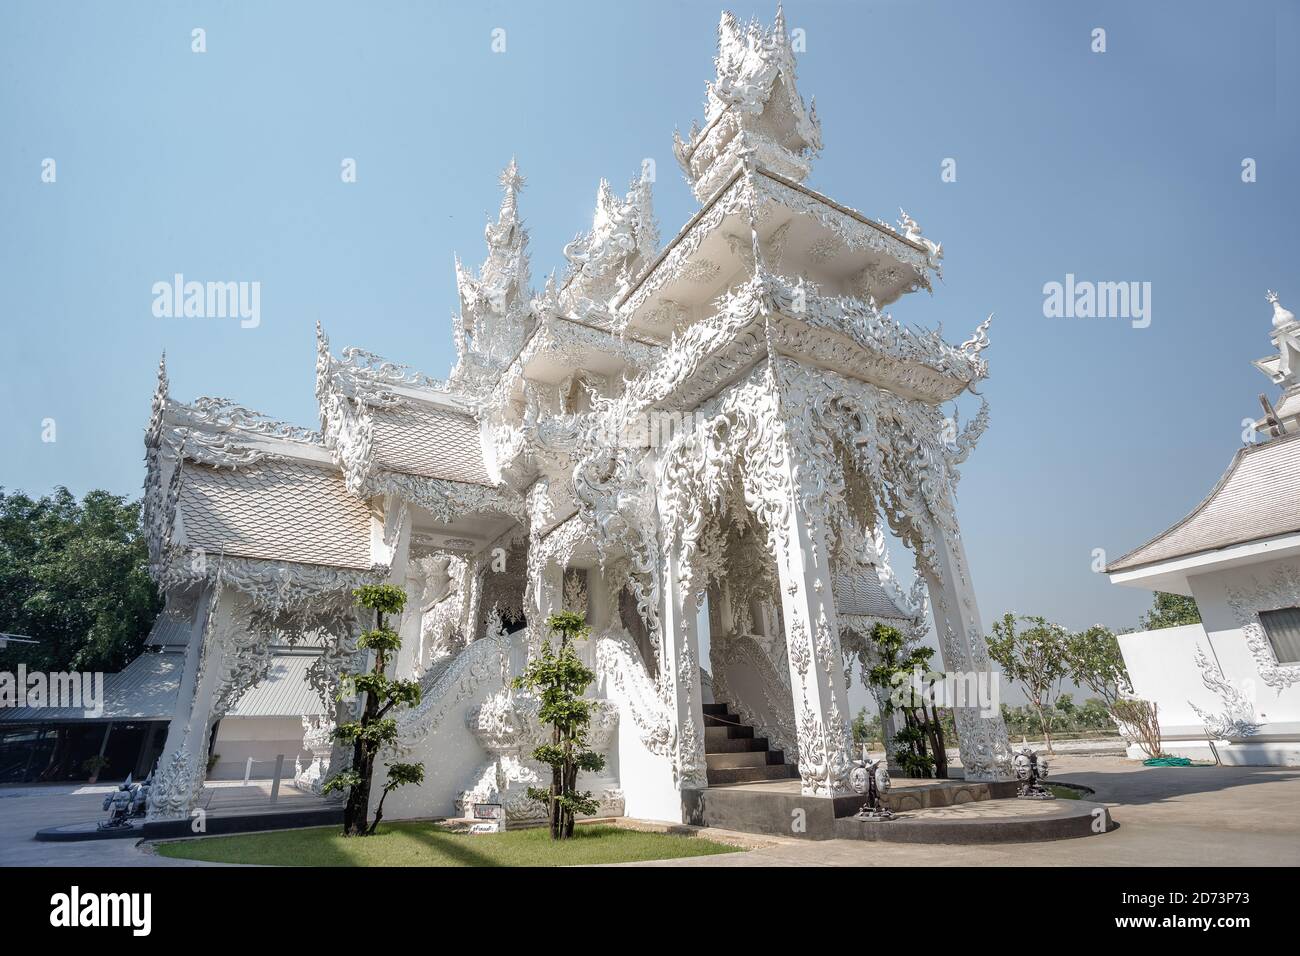 Magnifique temple blanc orné situé à Chiang Rai, dans le nord de la Thaïlande. Wat Rong Khun (Temple blanc), est un temple bouddhiste non conventionnel contemporain Banque D'Images